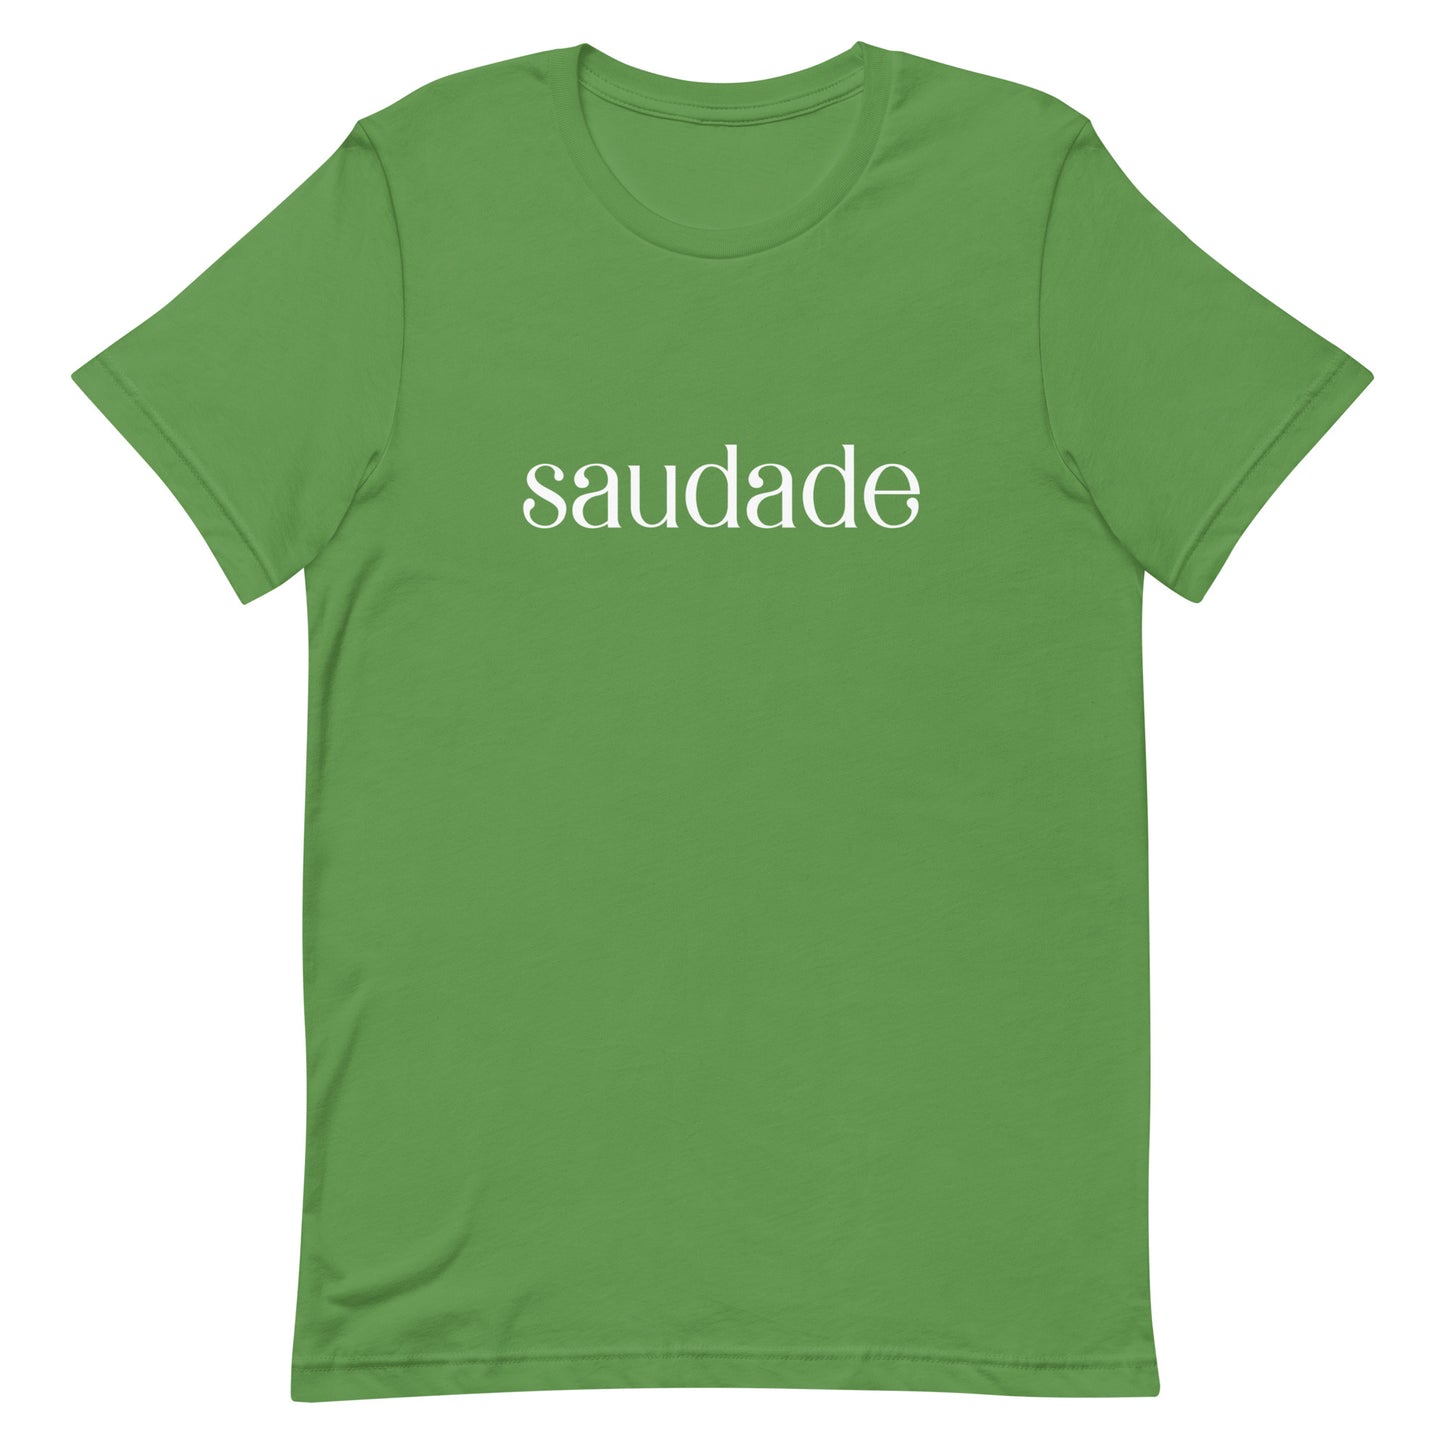 T-shirt "Saudade"